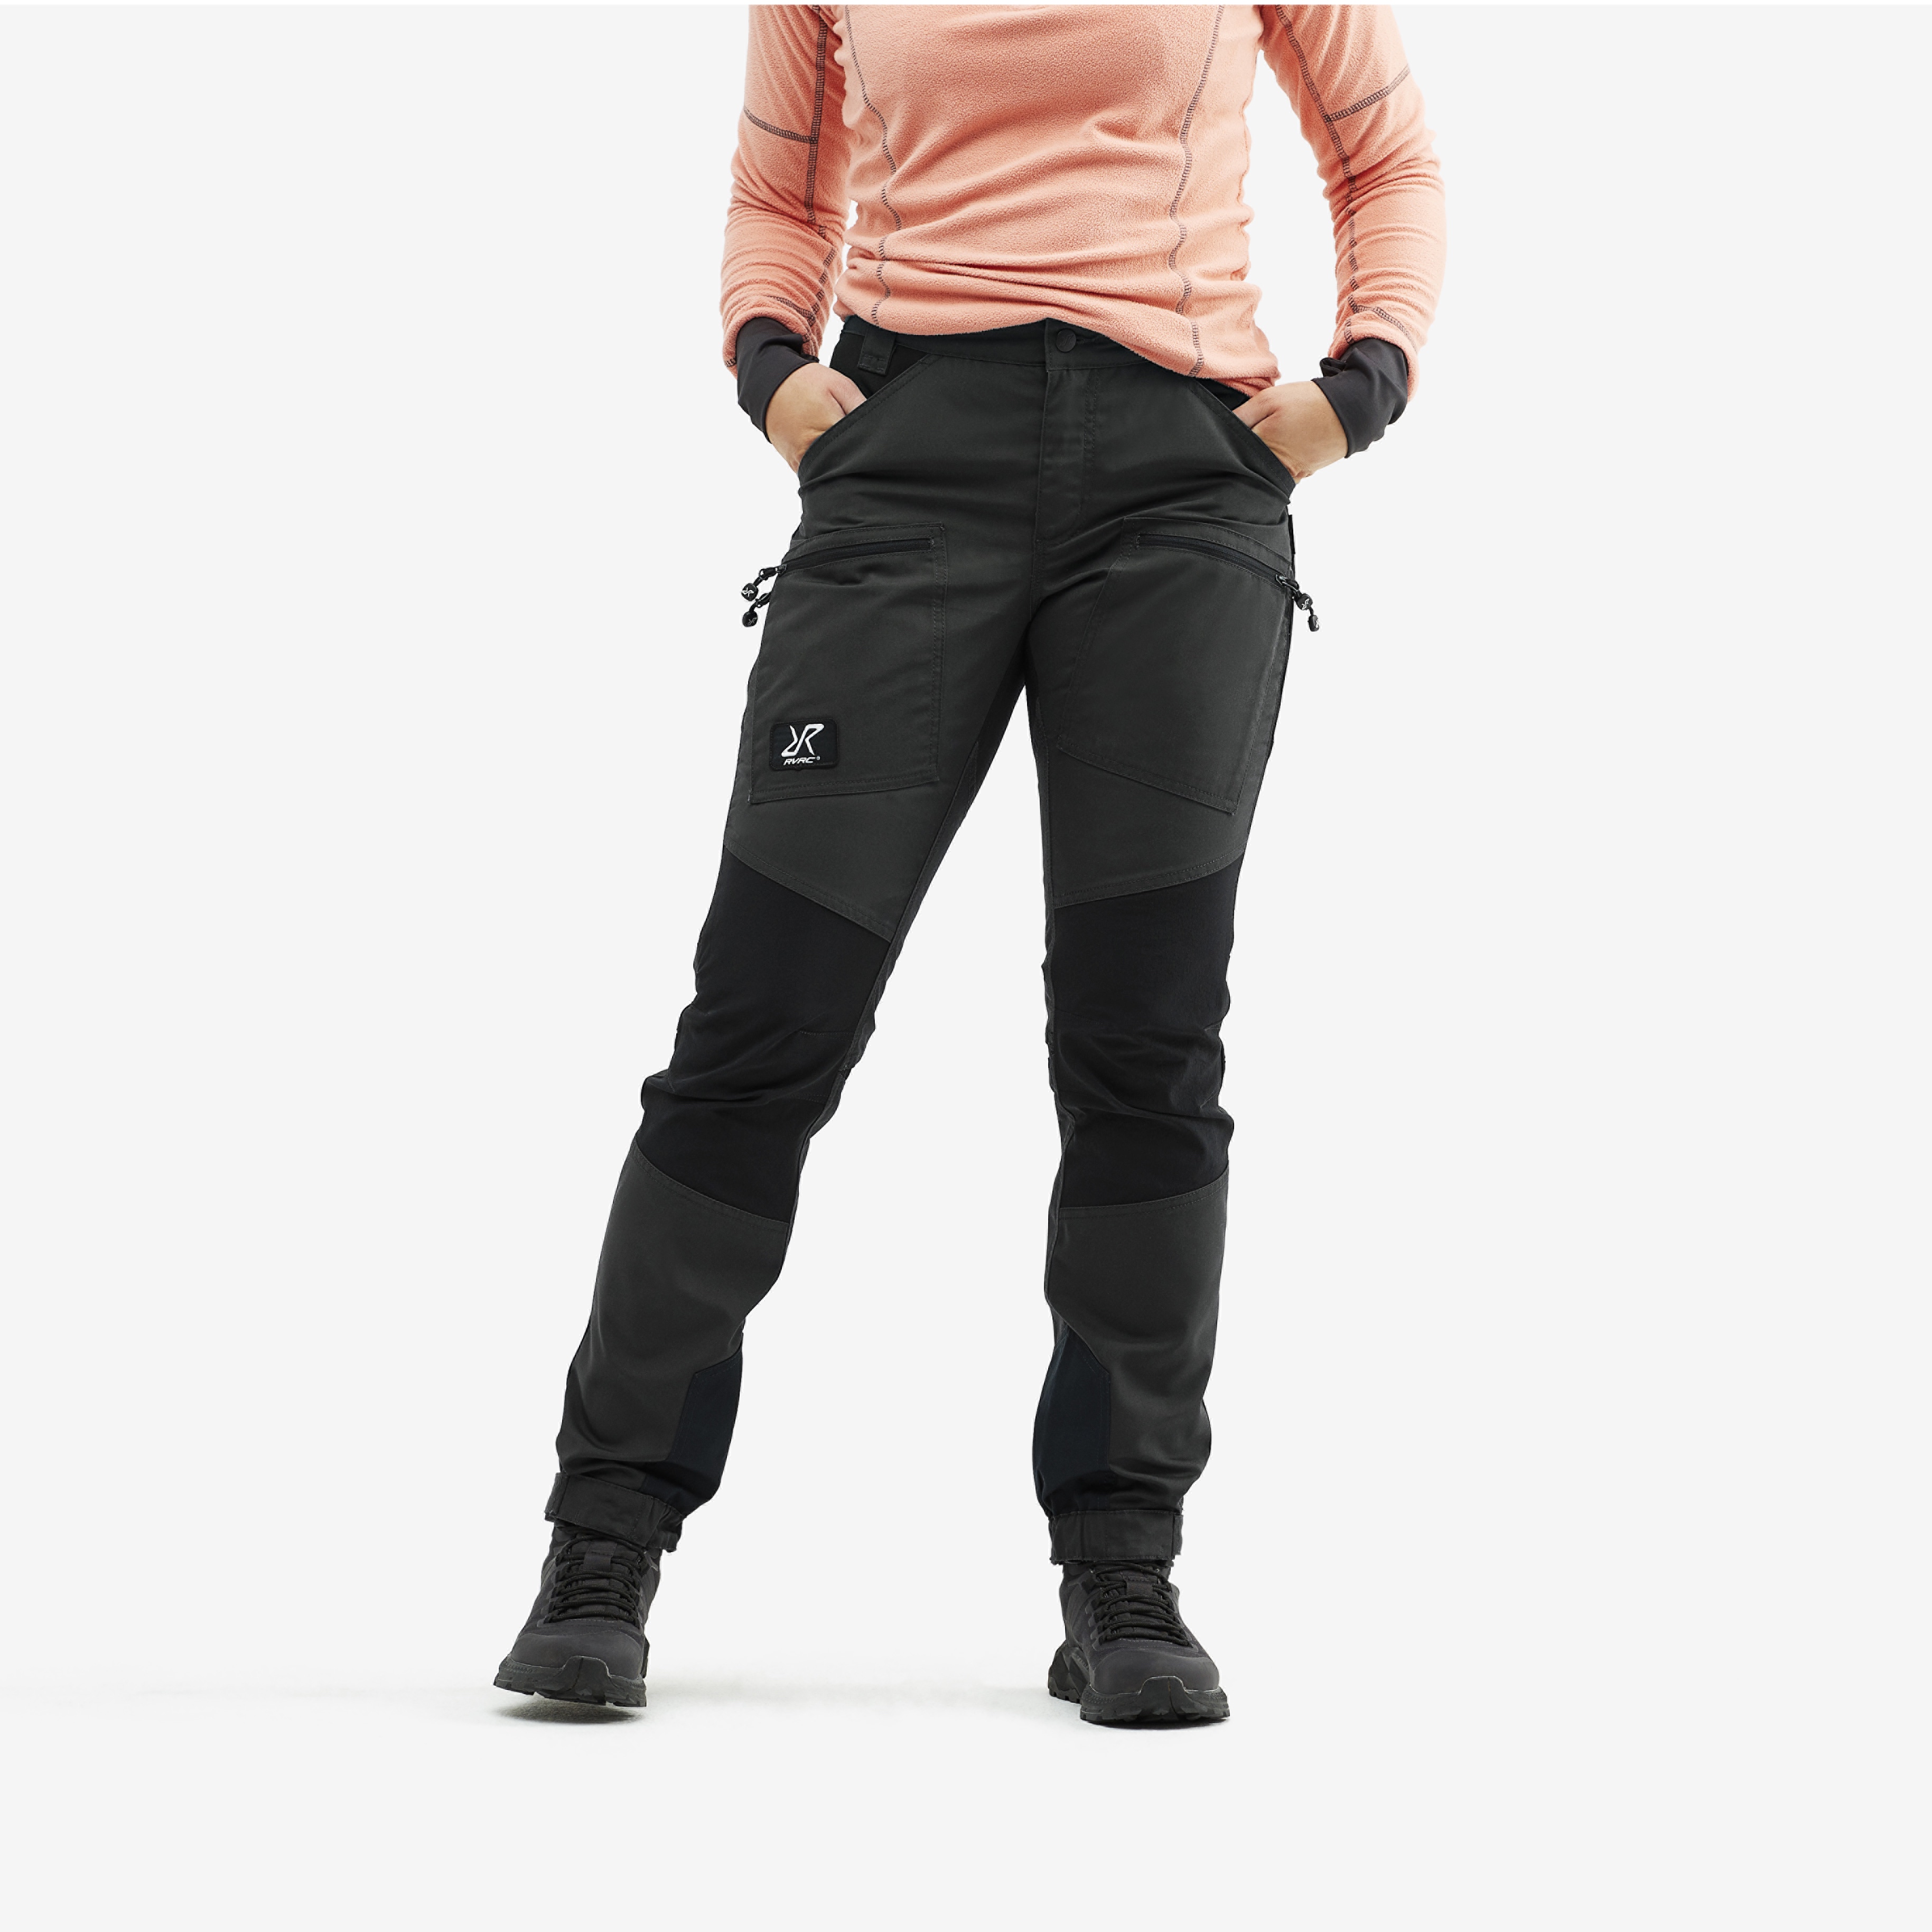 Buy Women's Warm Water Repellent Hiking Trousers Online | Decathlon